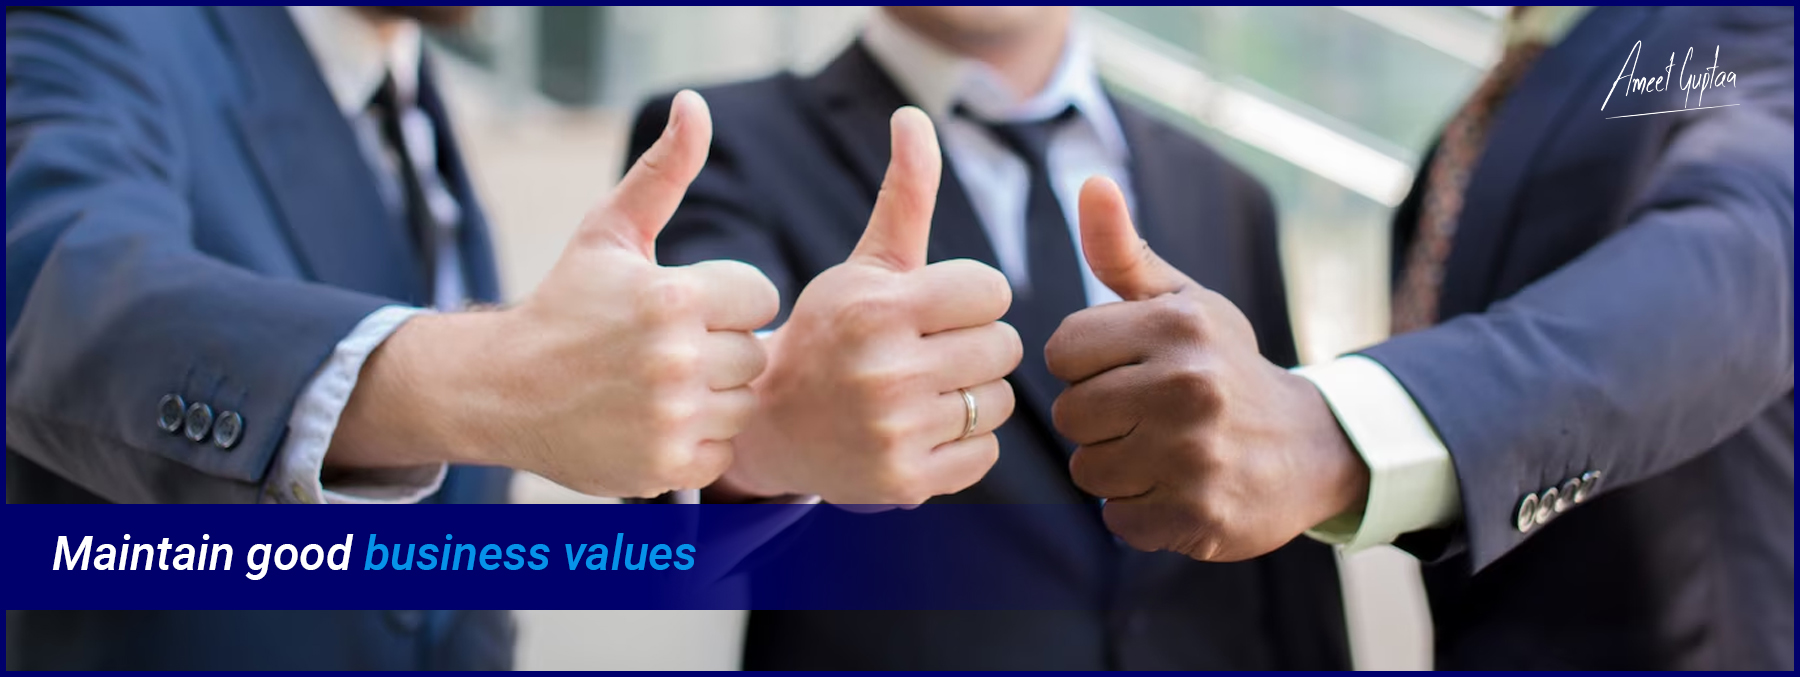 Maintain-good-business-values-AmeetGuptaa